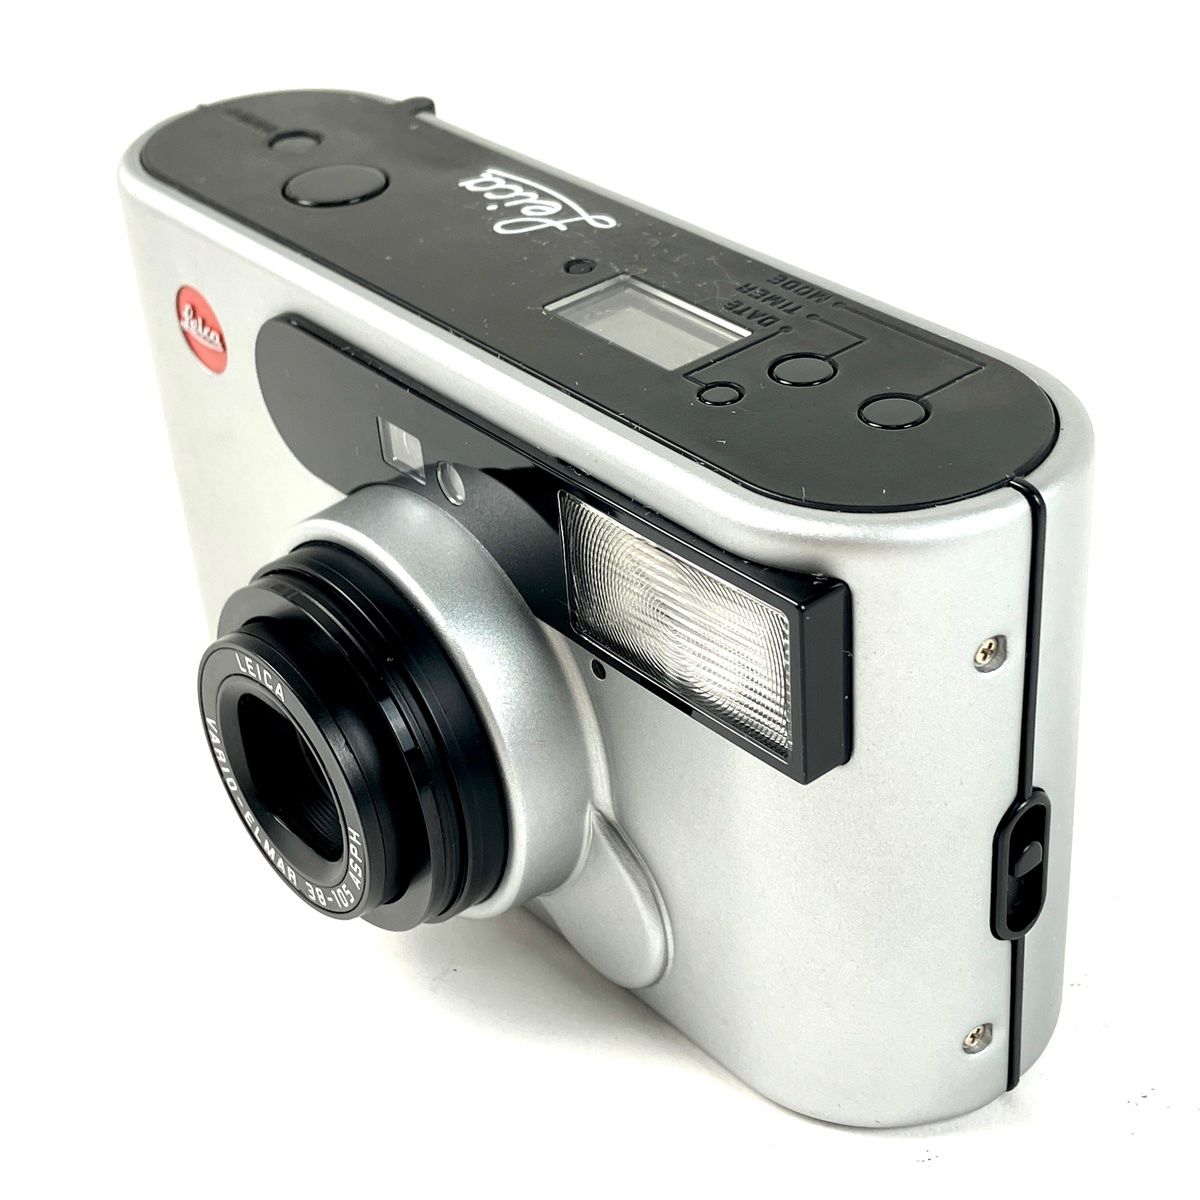 ライカ LEICA C1 VARIO-ELMAR 38-105 ASPH フィルム コンパクトカメラ 